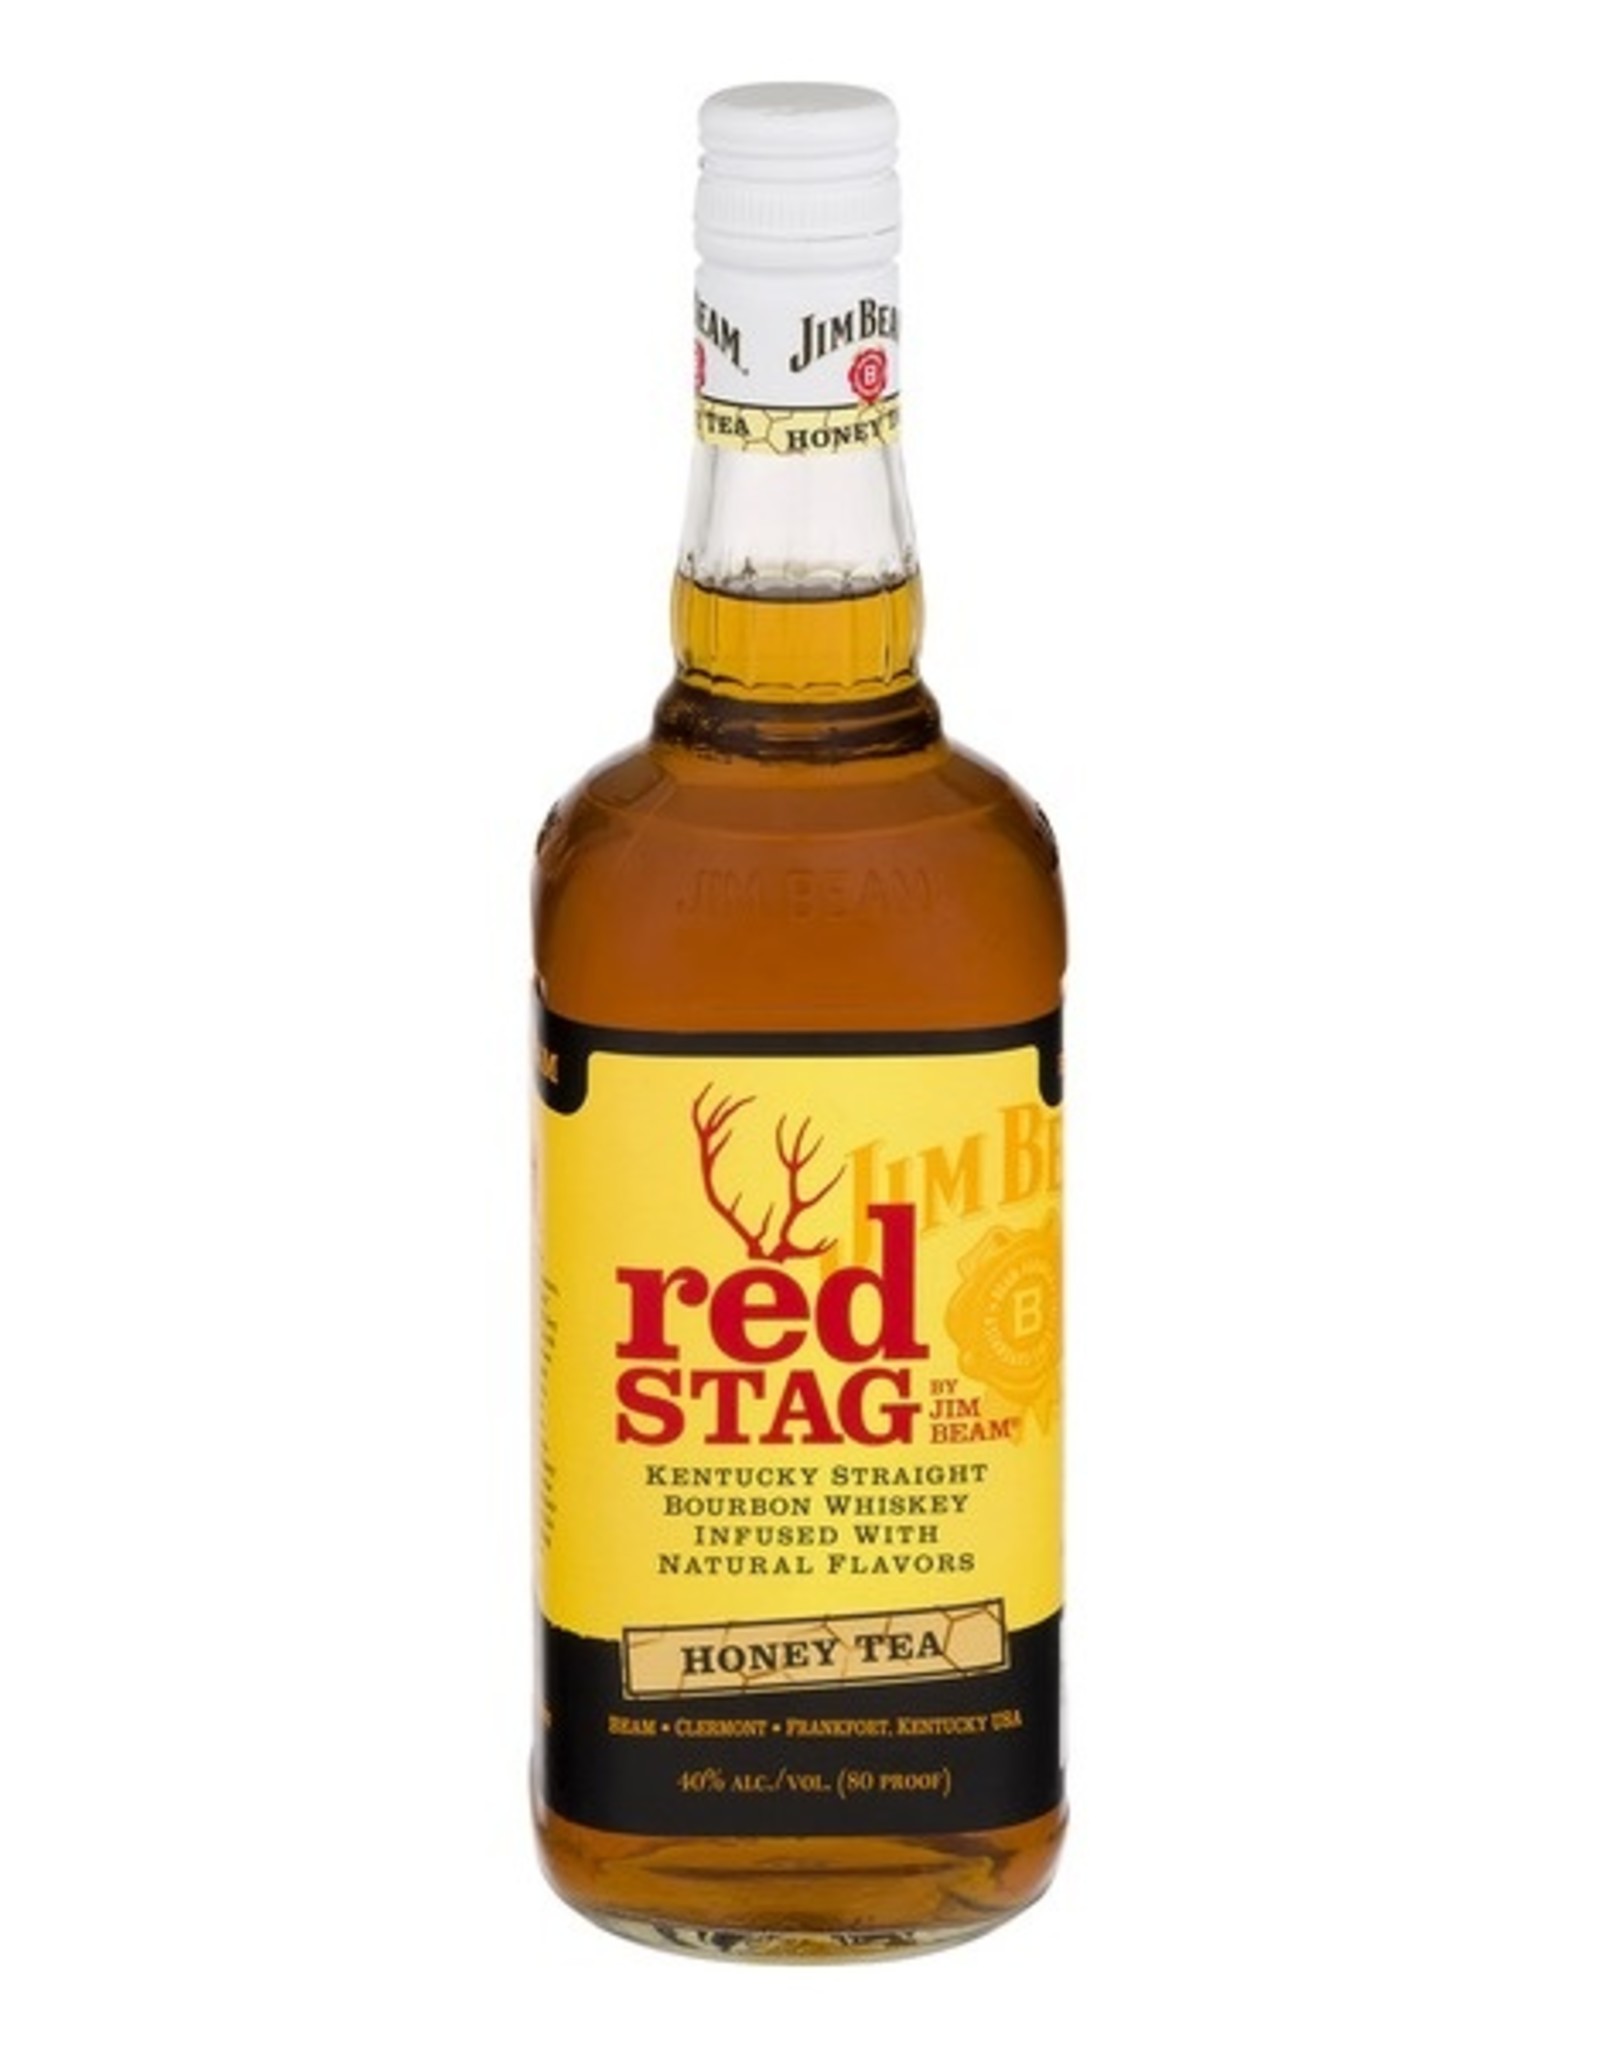 Jim Beam Jim Beam Red Stag Honey Bourbon